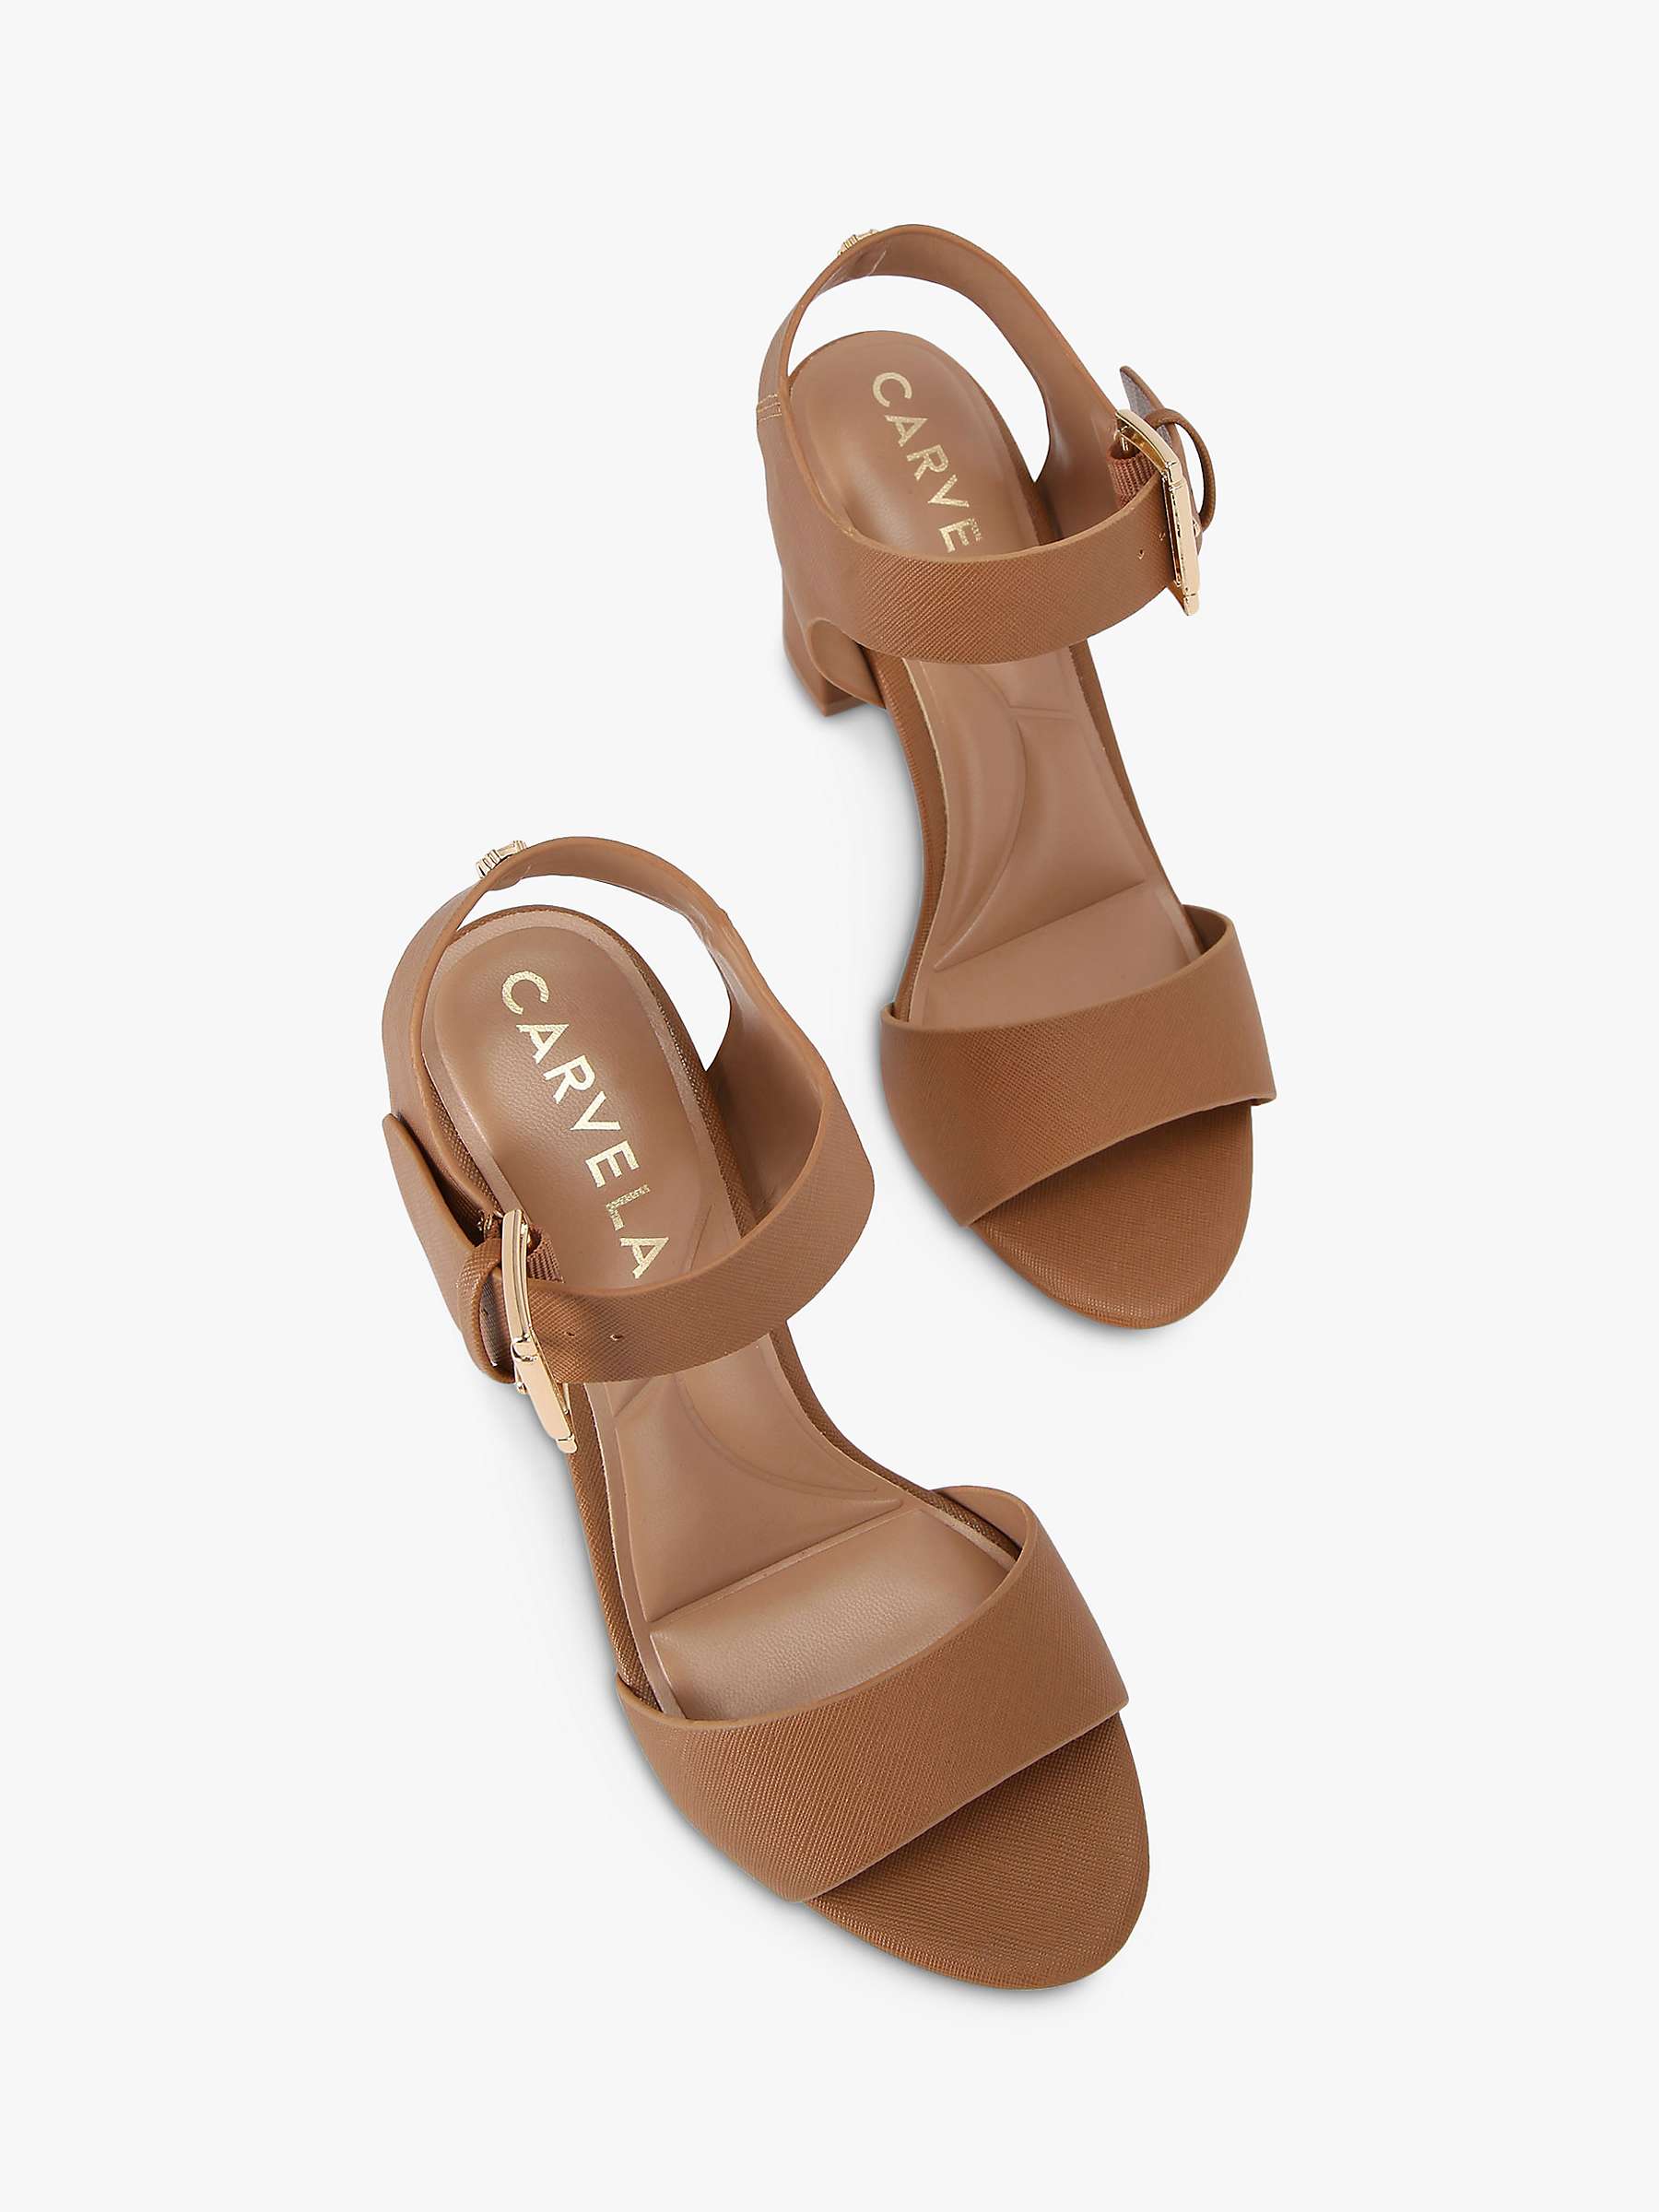 Buy Carvela Sadie 2 Block Heel Sandals Online at johnlewis.com